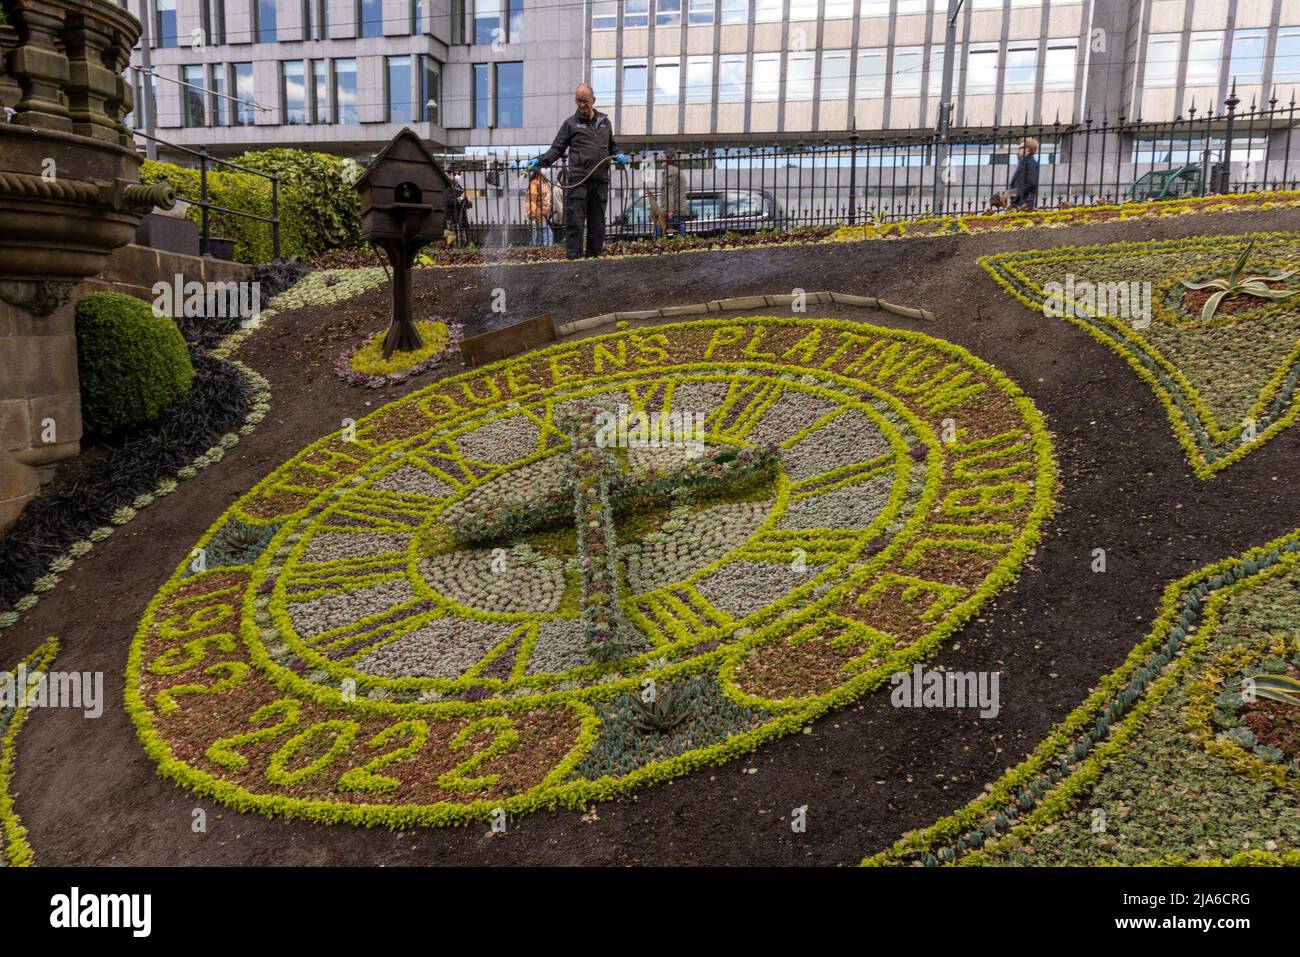 Edinburgh, Royaume-Uni. 27 mai 2022 en photo : les jardiniers des jardins de Princes Street Gardens à Édimbourg ont mis la touche finale à l'horloge florale qui célèbre cette année le Jubilé de platine de la Reine Elizabeth II Crédit : Rich Dyson/Alay Live News Banque D'Images